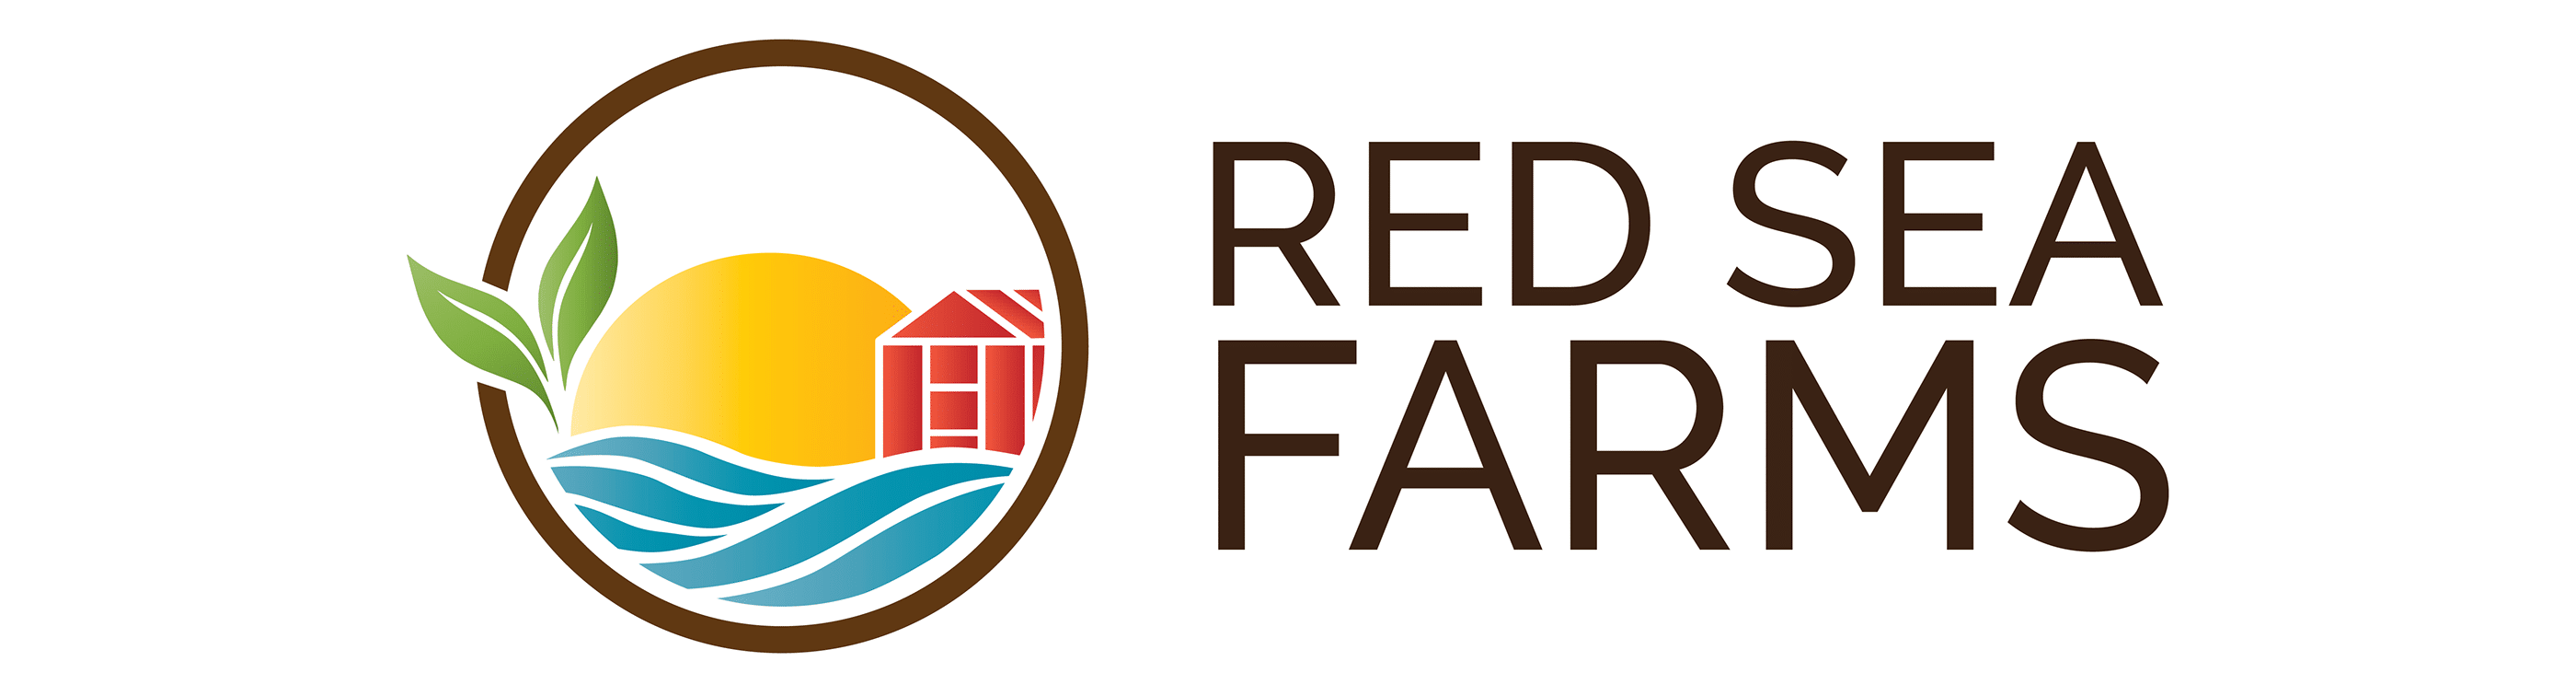 Redsea Farms